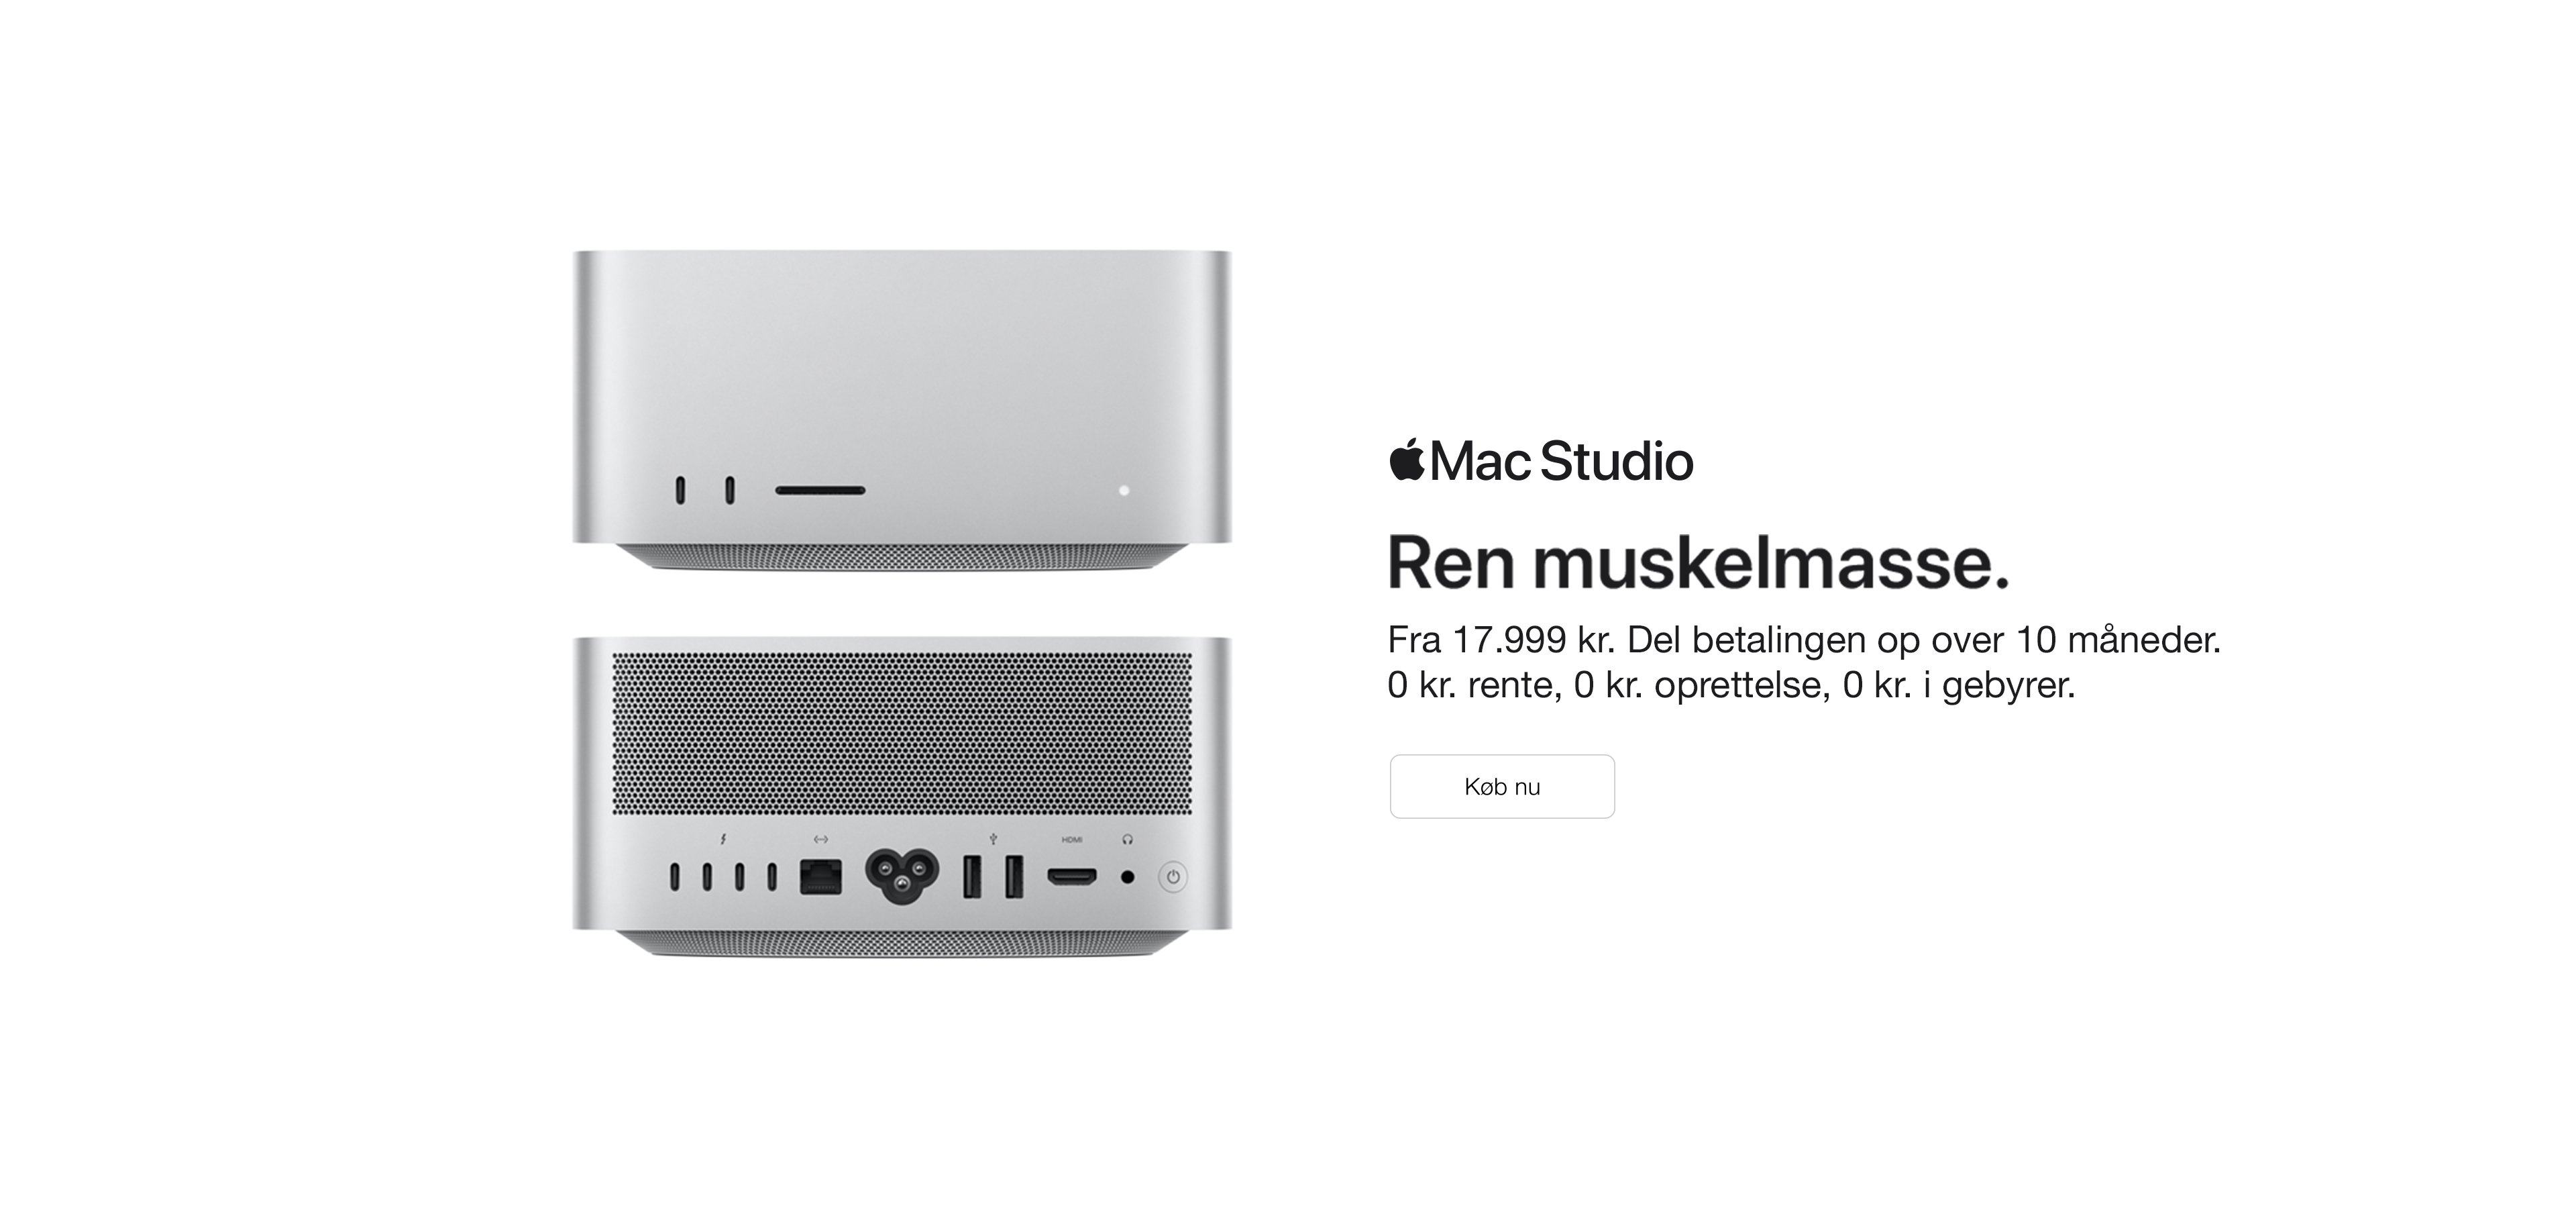 Nyhed! Mac Studio